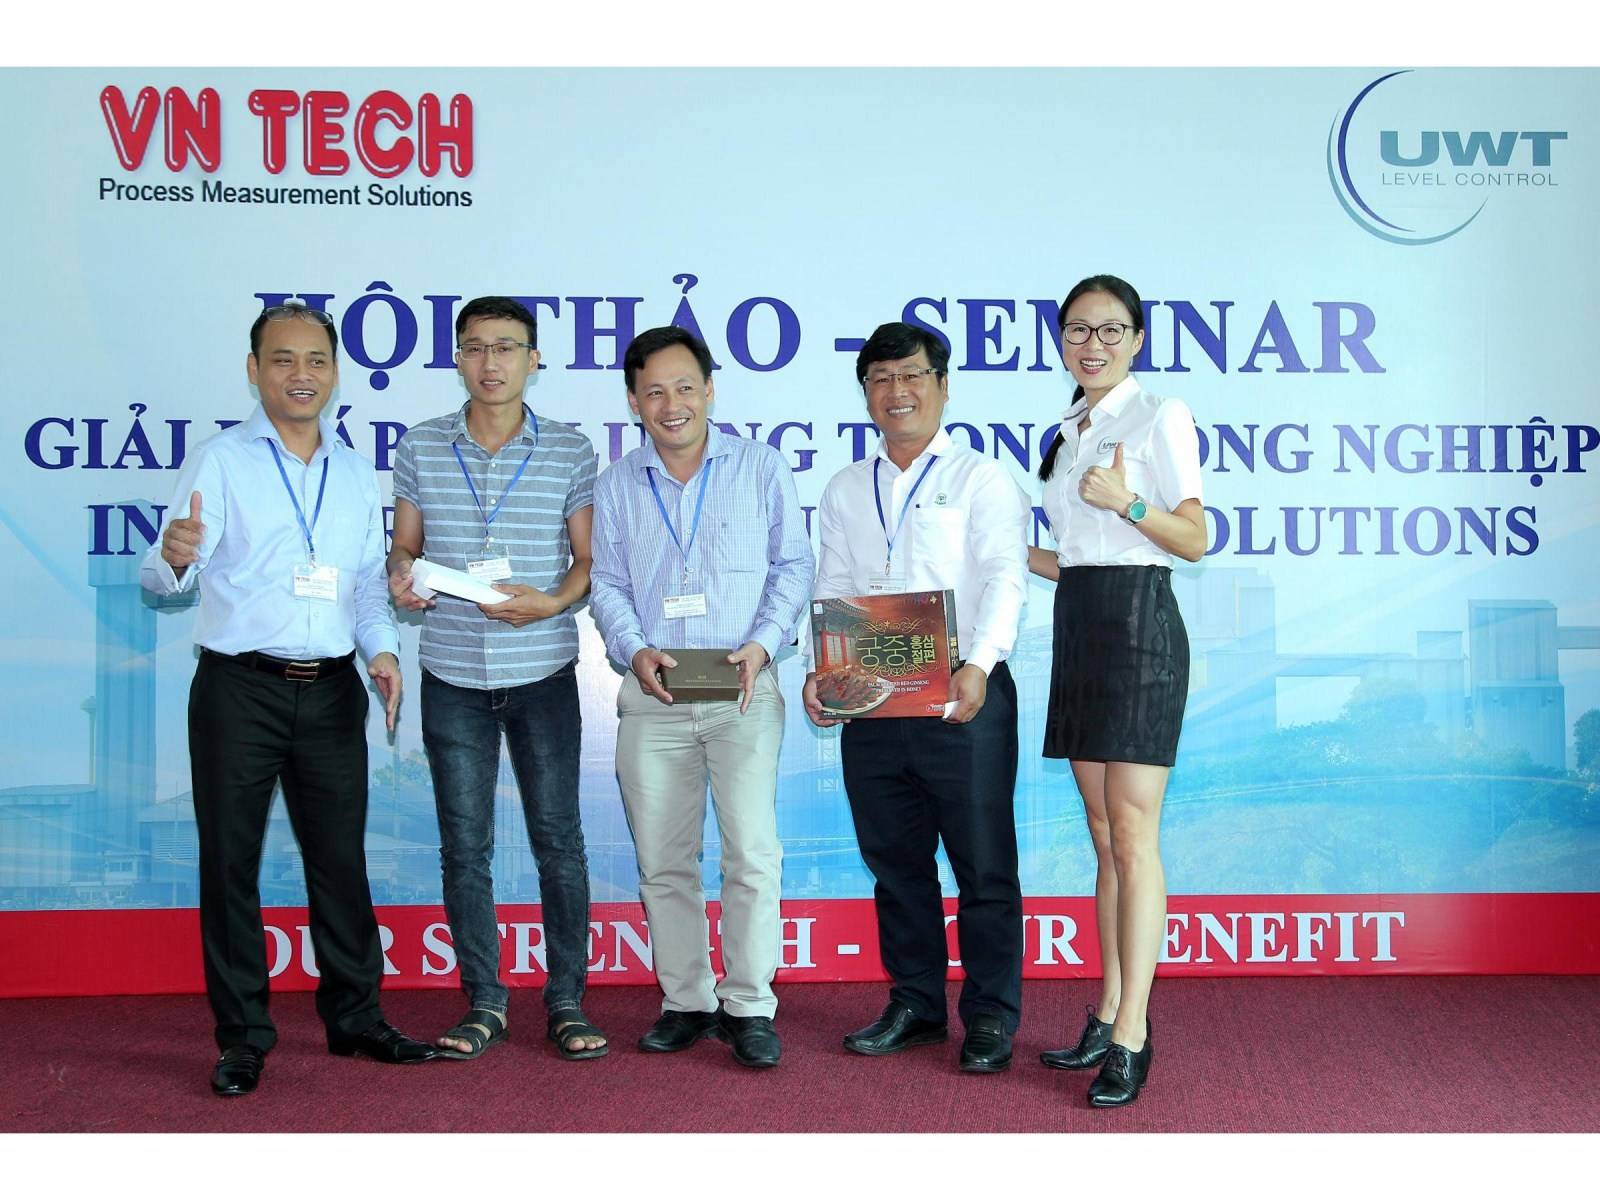 UWT Distributor - Viet Nhat Industrial Equipment Co., Ltd.